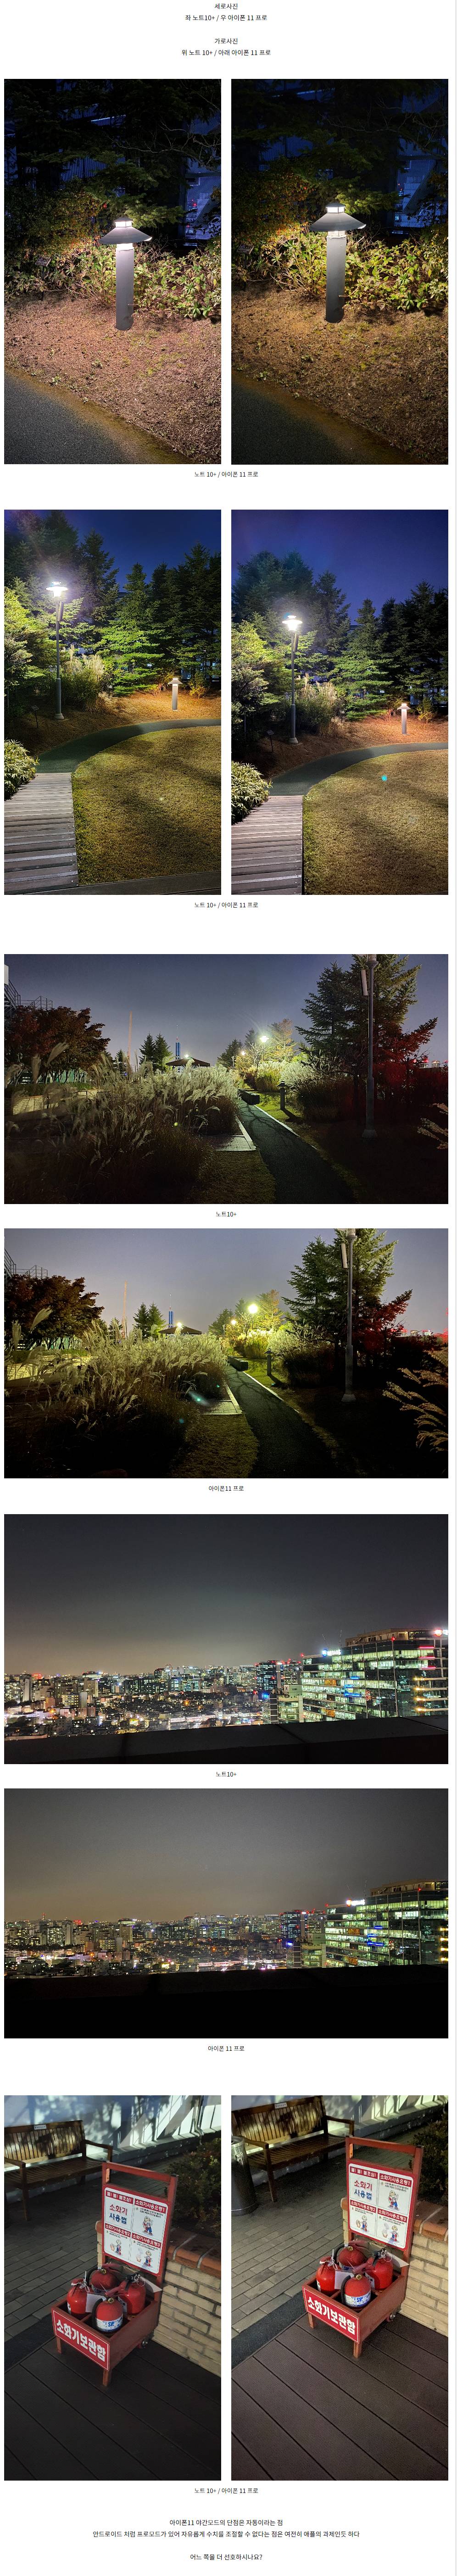 아이폰11 프로와 노트10+ 야간사진 비교 | 인스티즈